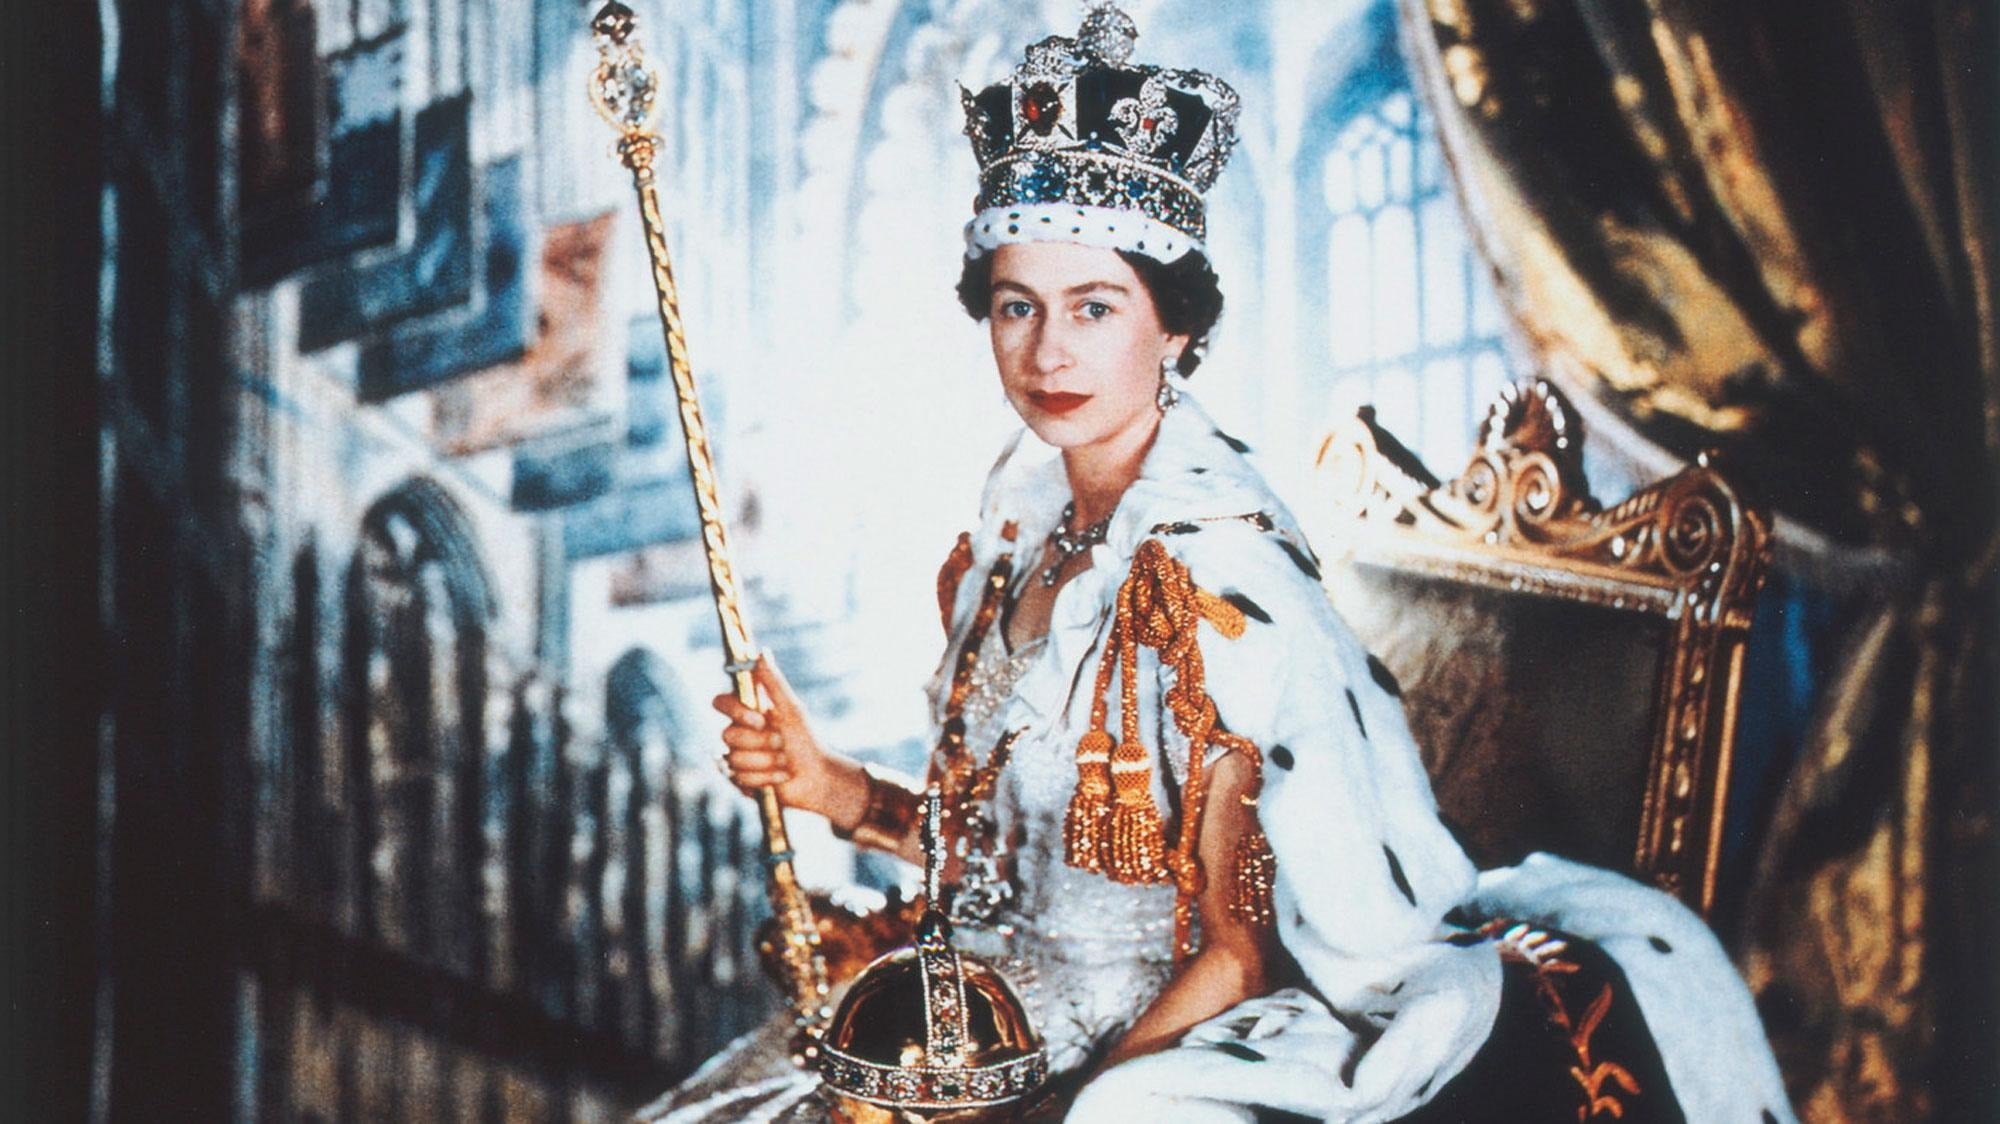 HRH Queen Elizabeth II 1926-2022